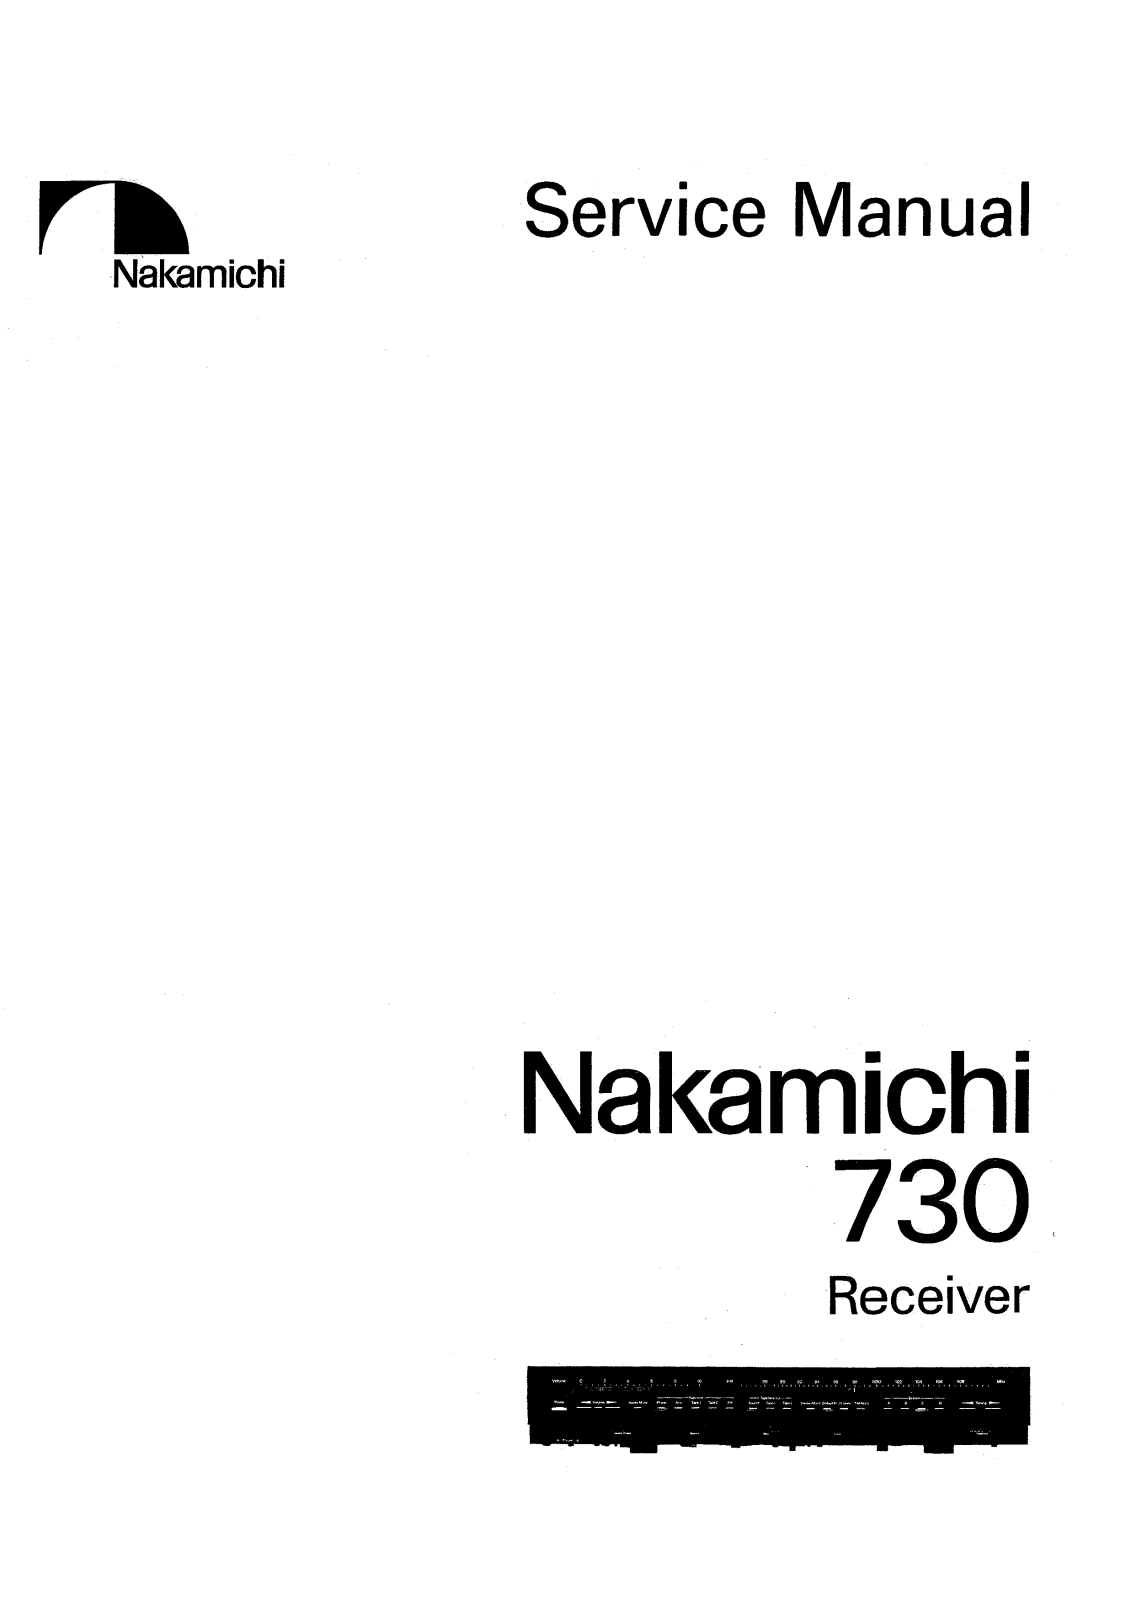 Nakamichi 730 Service Manual